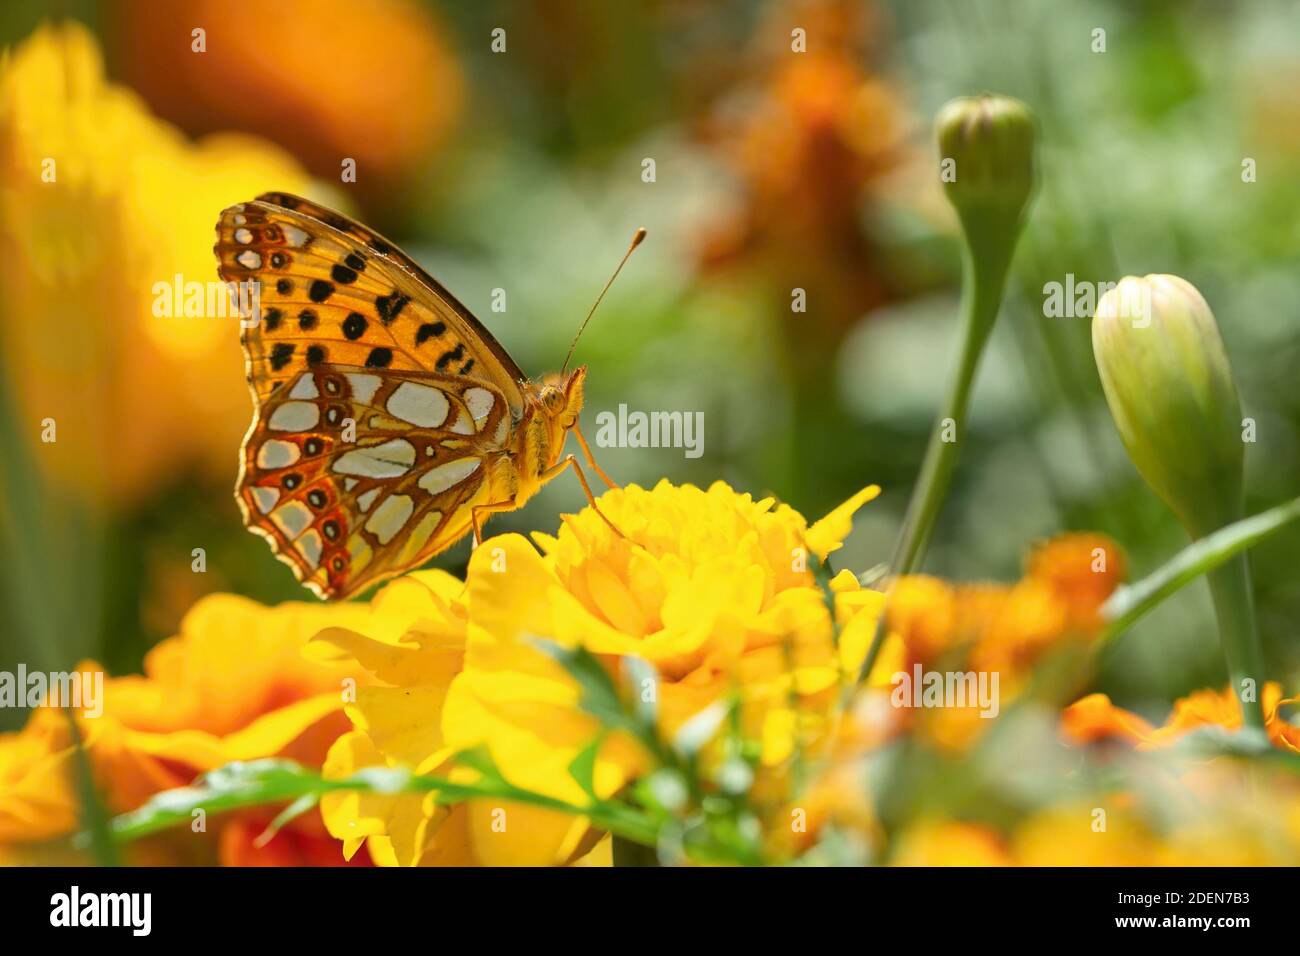 Königin von Spanien Fritillary, ein kleiner orange, weiß und schwarz Schmetterling, sitzt auf gelben Blume wächst in einem Garten. Sonniger Sommertag. Verschwommenes Backgroun Stockfoto